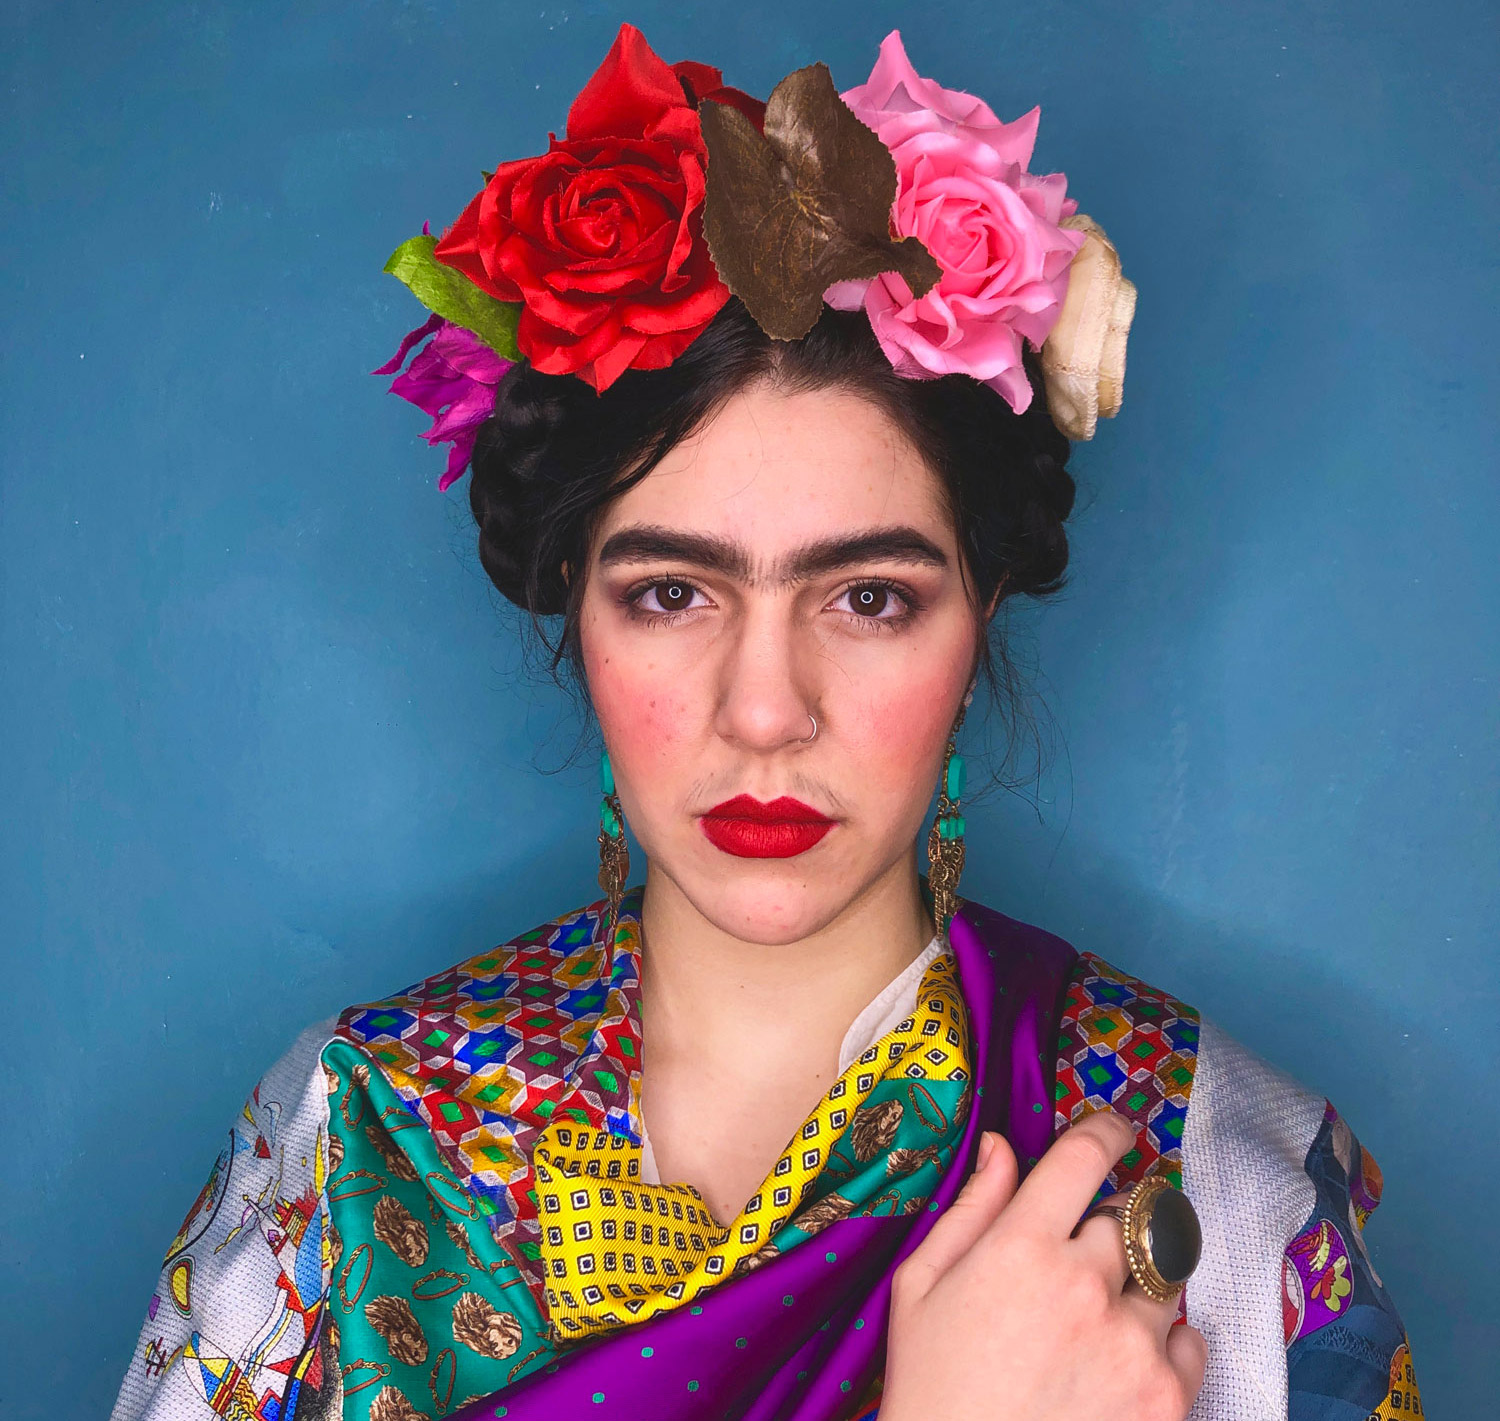 Ritratto fotografico cosplay di Frida Kahlo, interpretata per le stole Misto Sera Vipuntozero